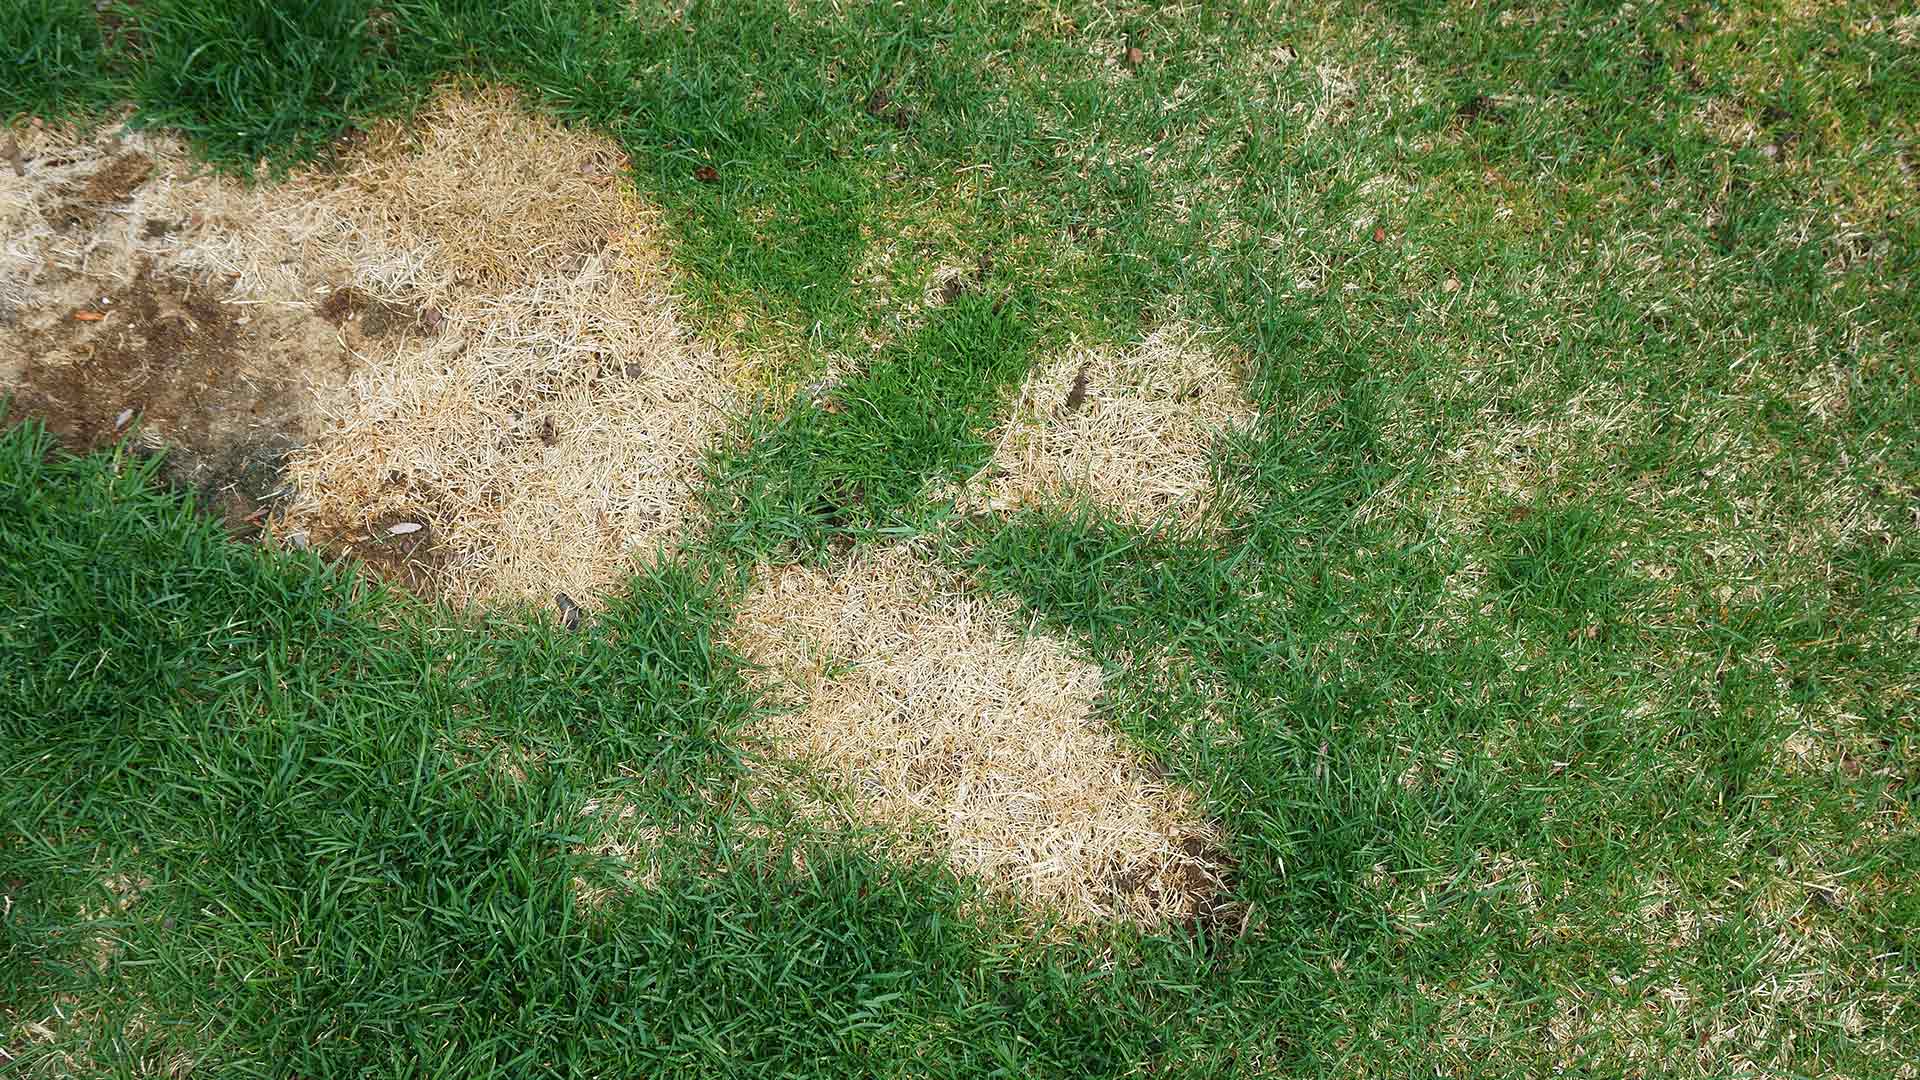 Lawn disease spots in a yard's grass near Carmel, IN.